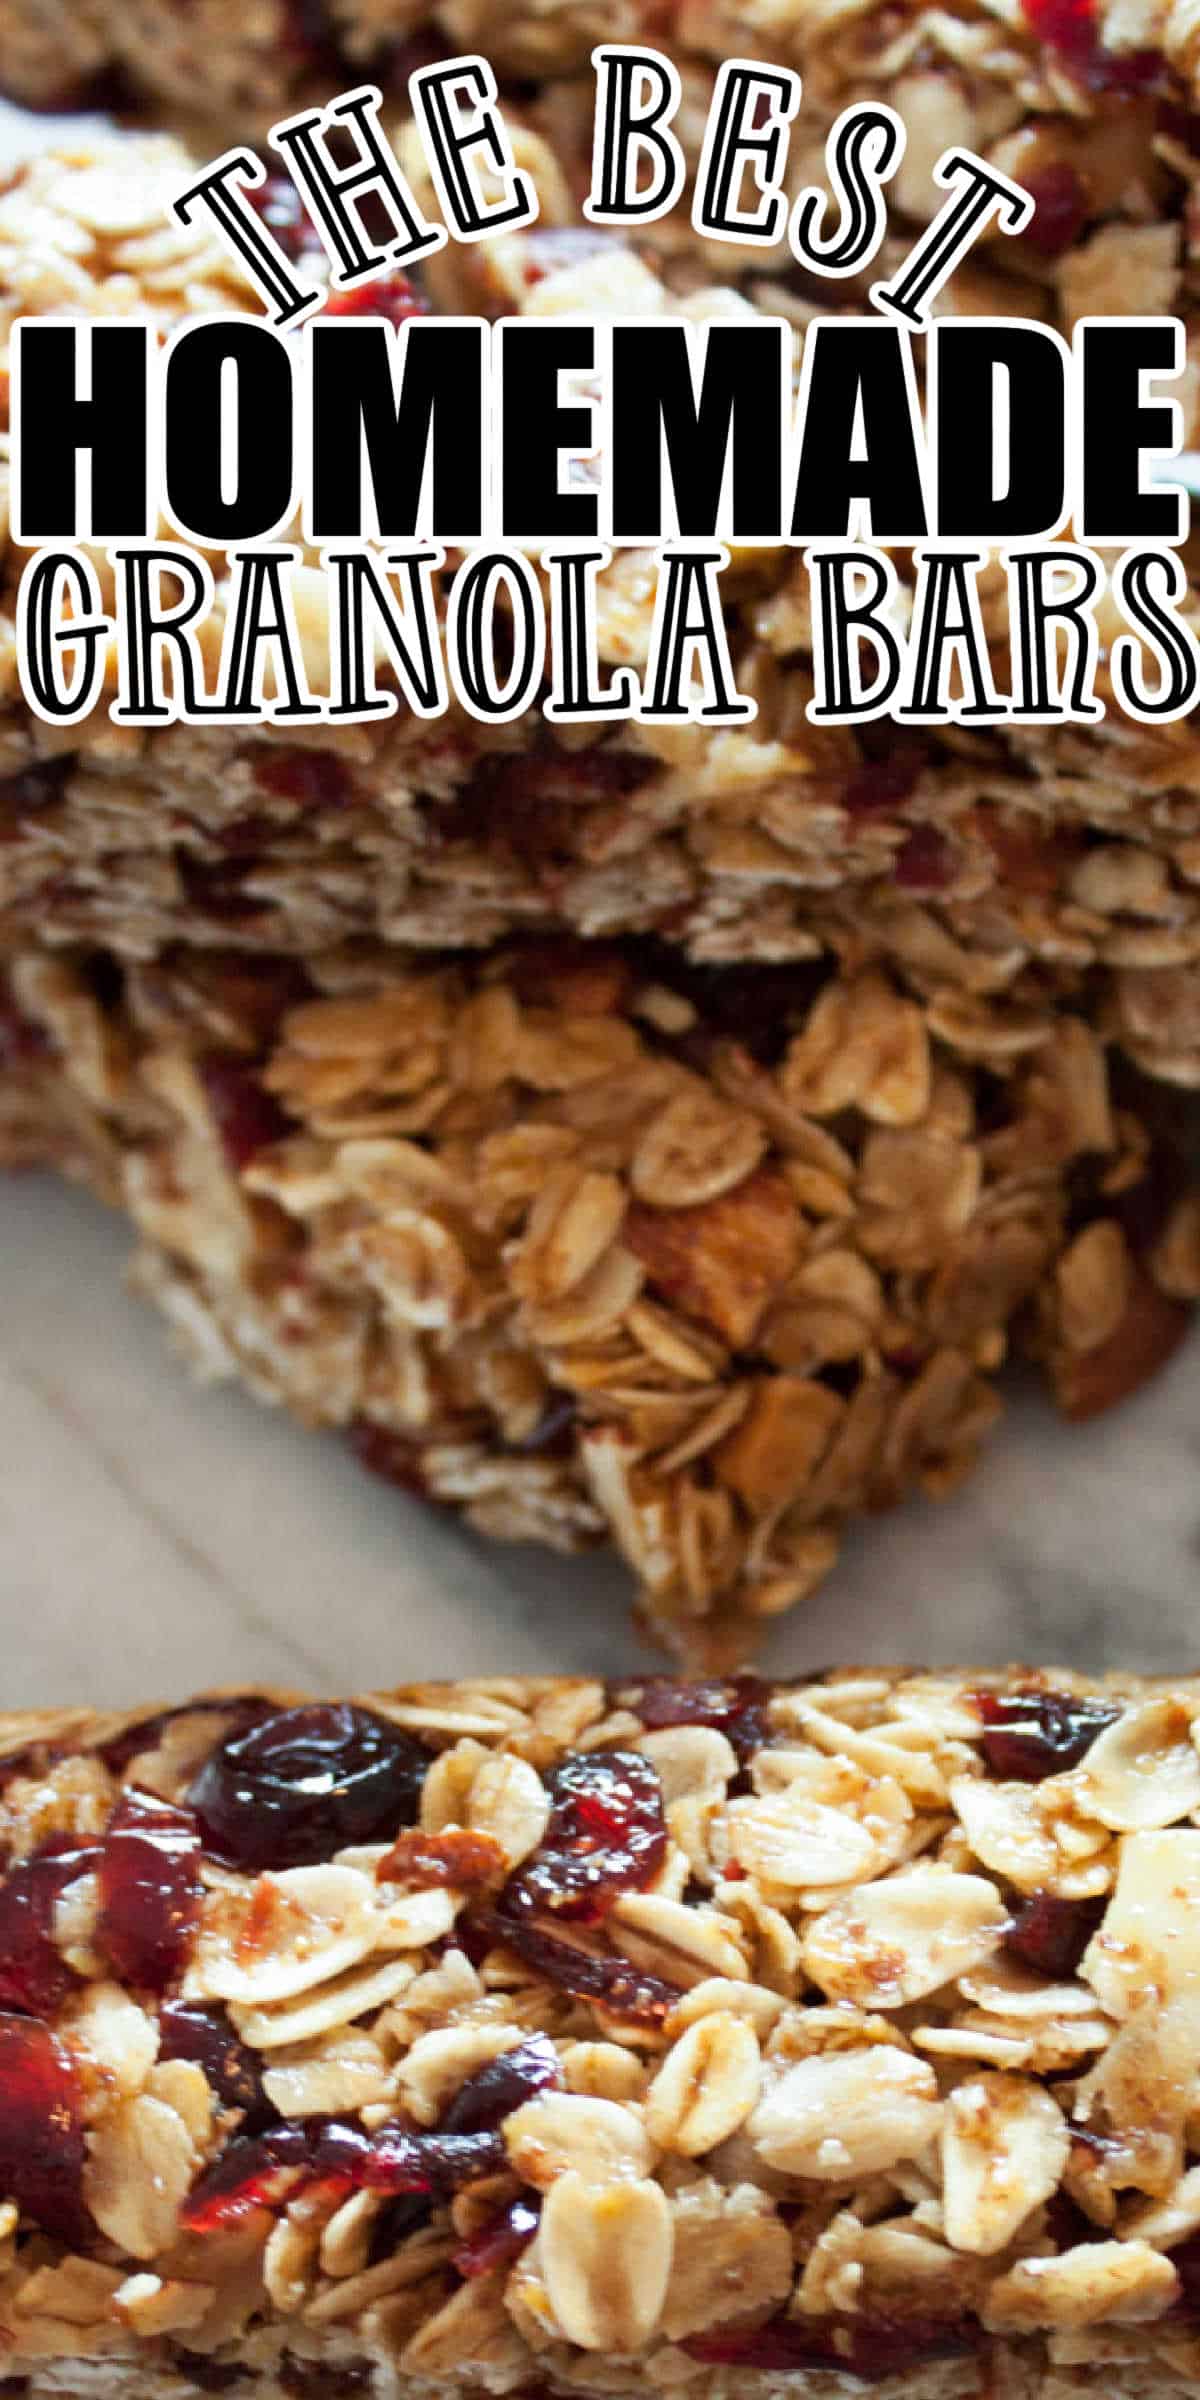 Cranberry Homemade Granola Bars Recipe